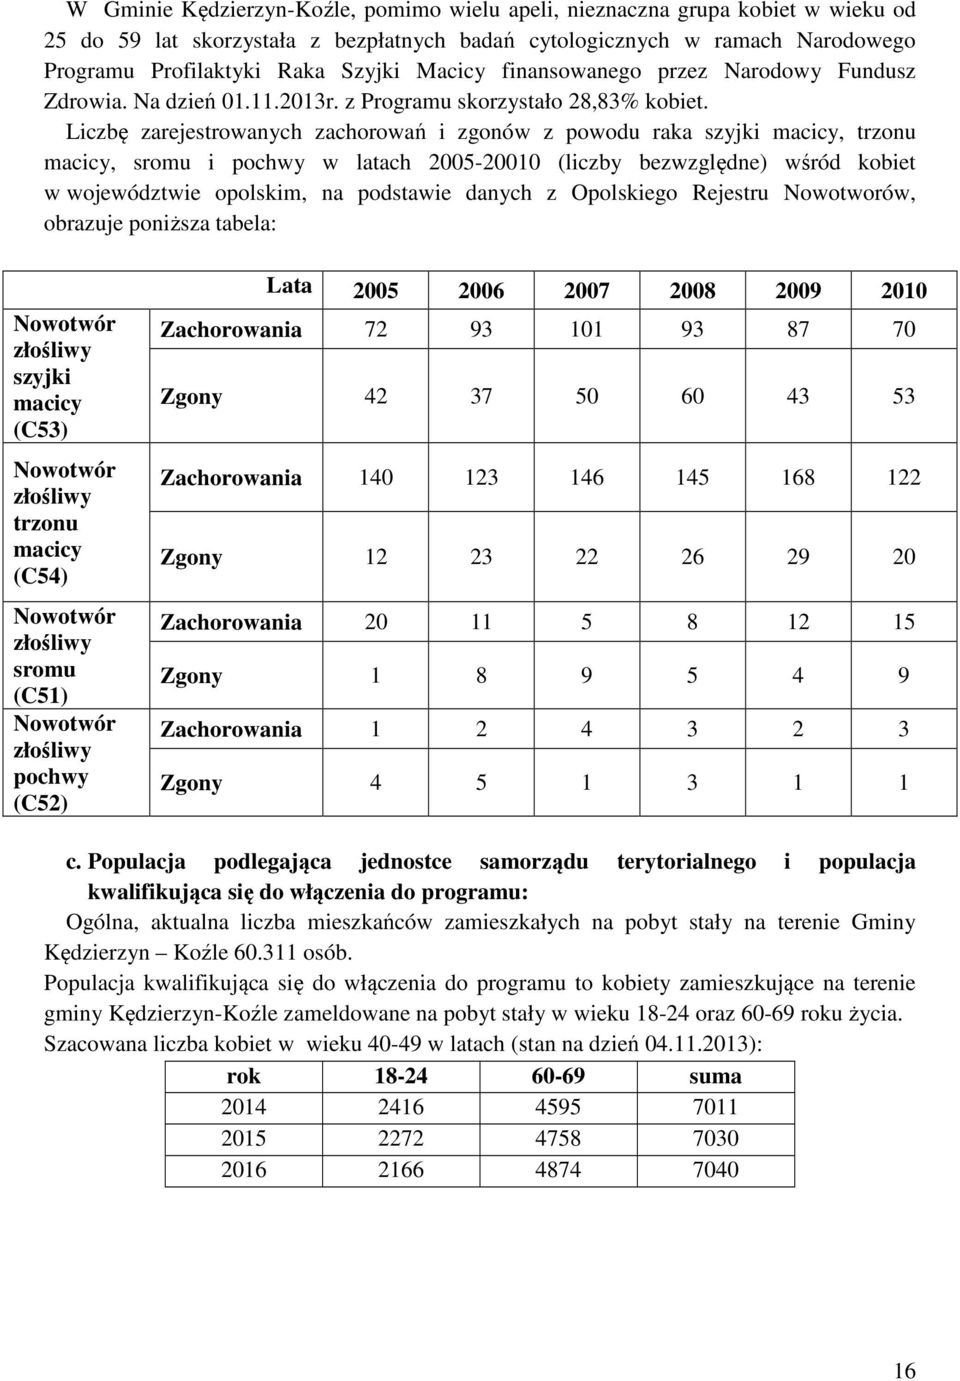 Liczbę zarejestrowanych zachorowań i zgonów z powodu raka szyjki macicy, trzonu macicy, sromu i pochwy w latach 2005-20010 (liczby bezwzględne) wśród kobiet w województwie opolskim, na podstawie